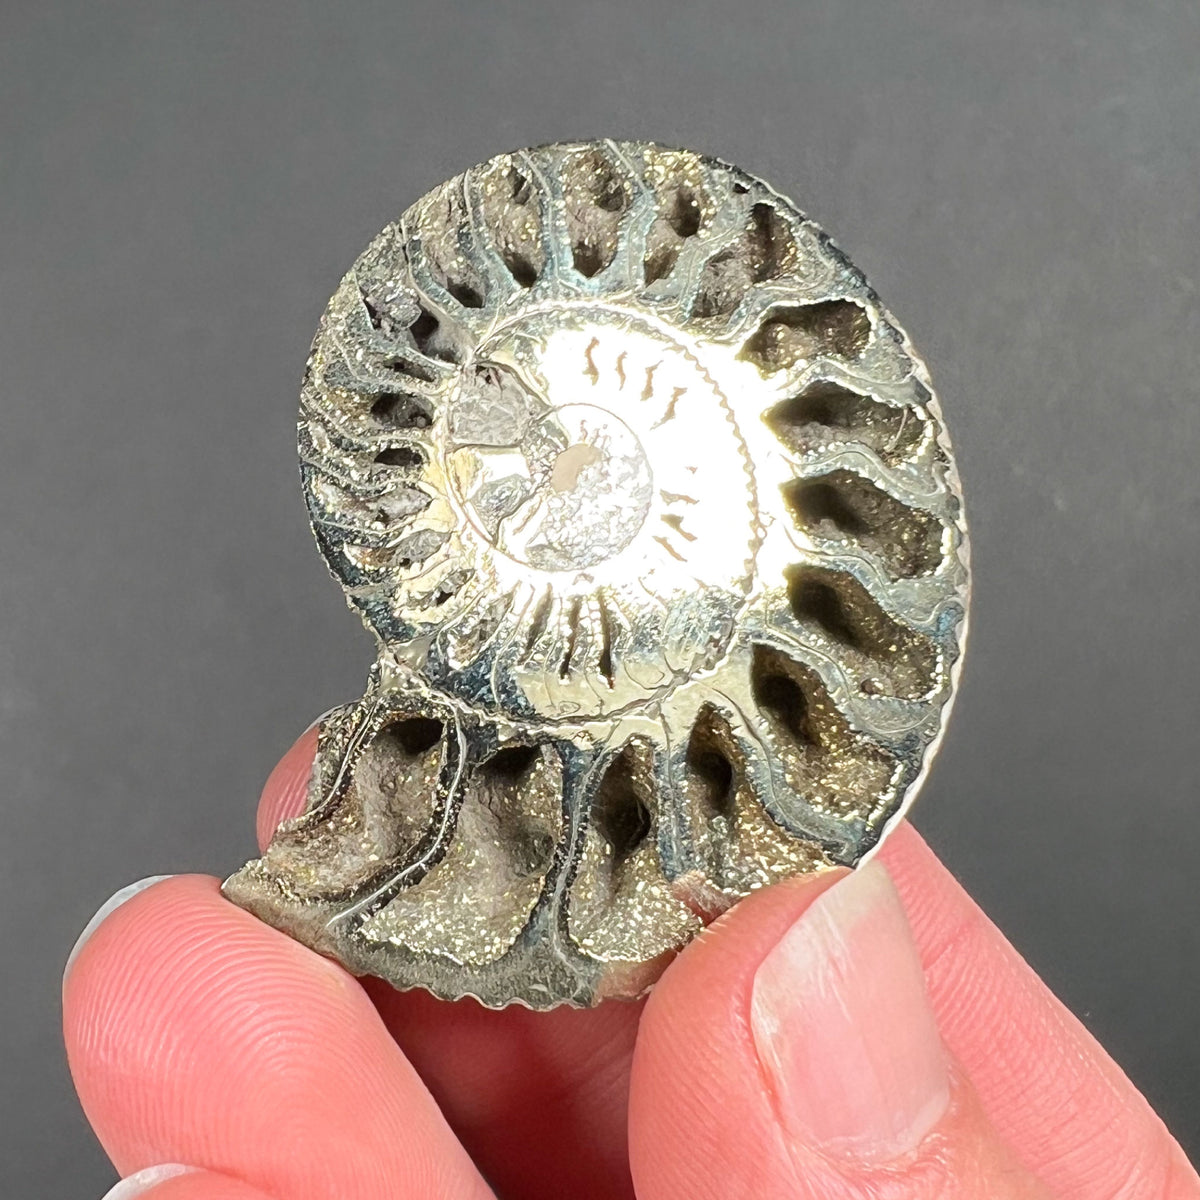 Pyritized Ammonite Shell